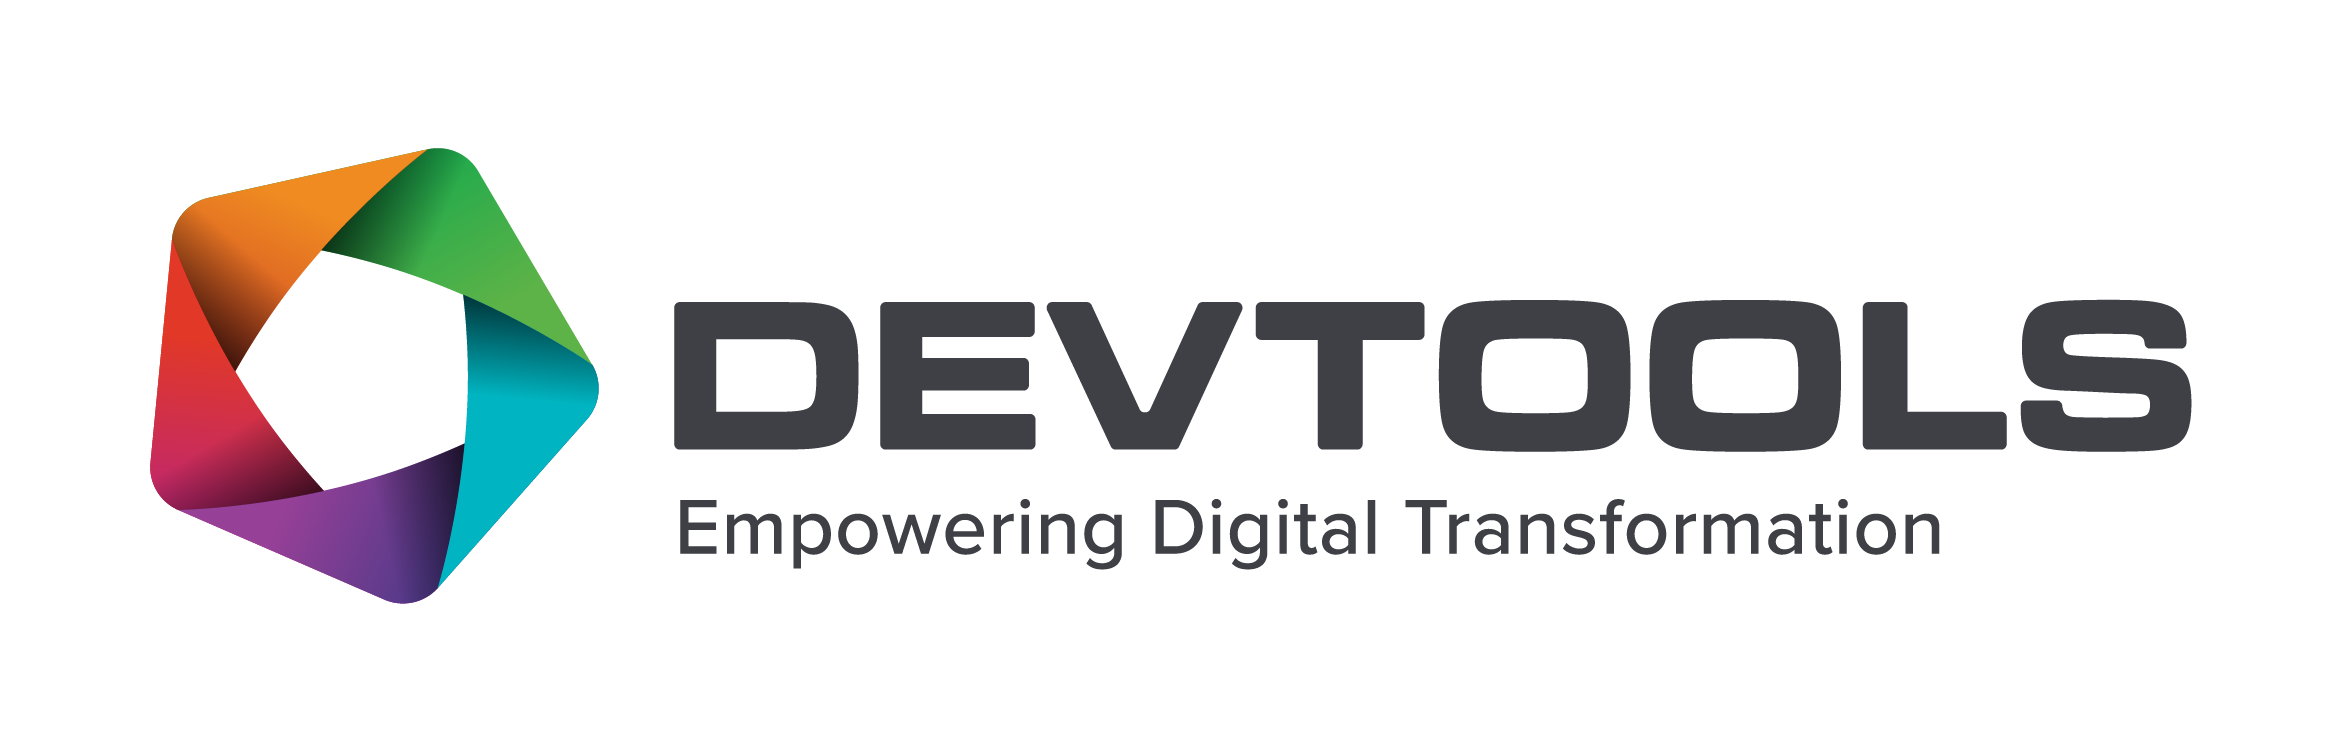 Logotipo Devtools